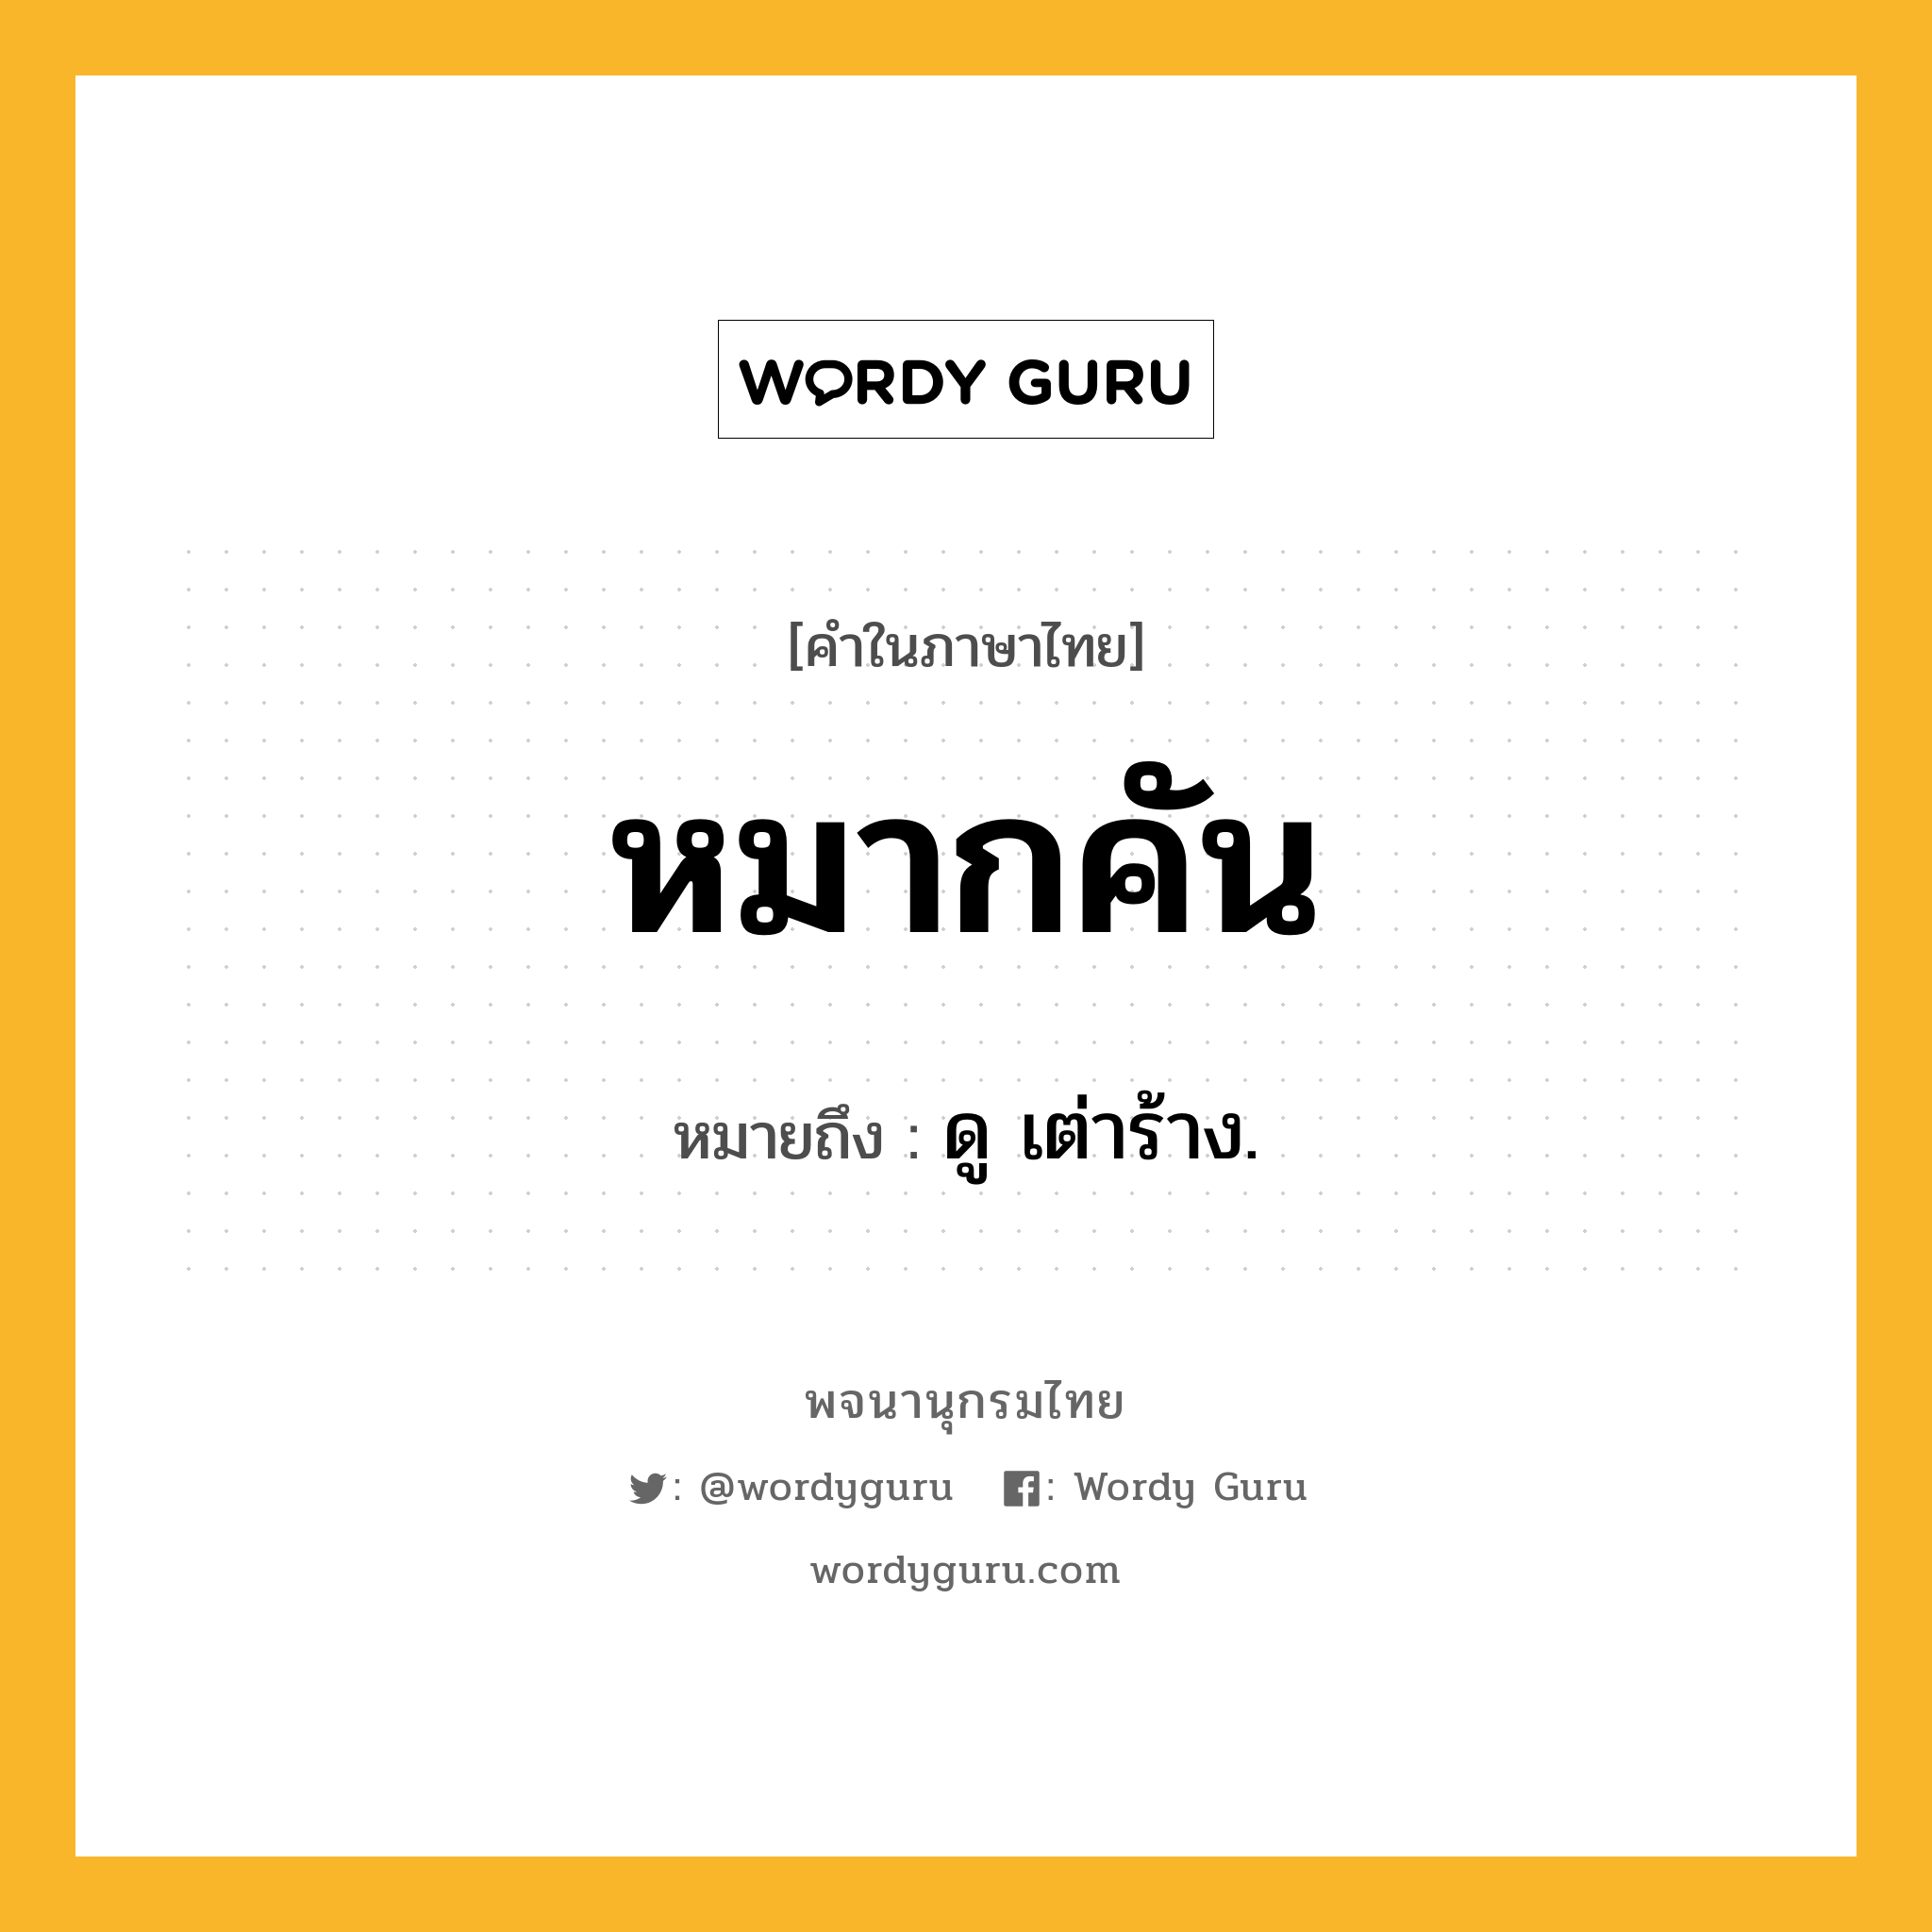 หมากคัน ความหมาย หมายถึงอะไร?, คำในภาษาไทย หมากคัน หมายถึง ดู เต่าร้าง.